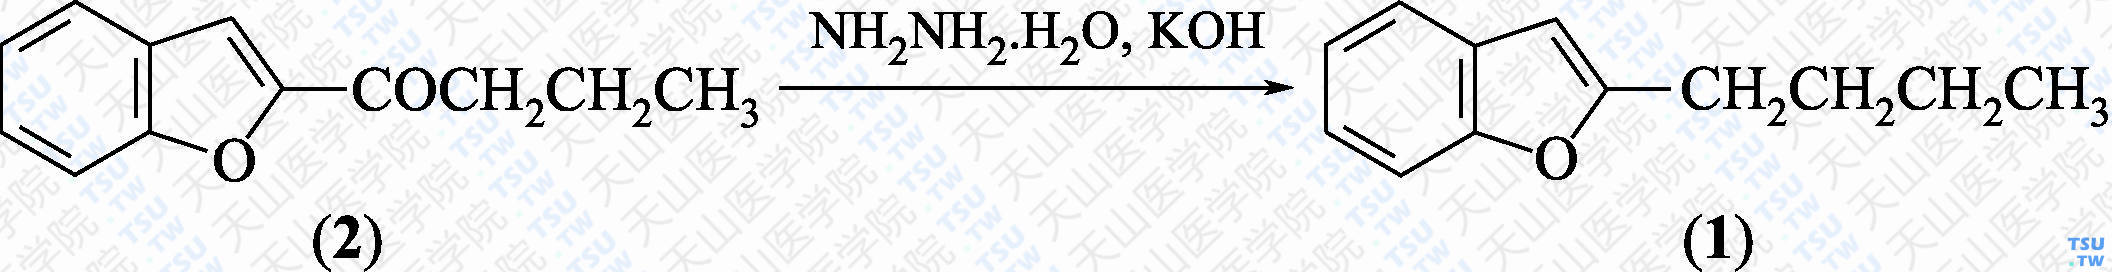 2-丁基苯并呋喃（分子式：C<sub>12</sub>H<sub>14</sub>O）的合成方法路线及其结构式